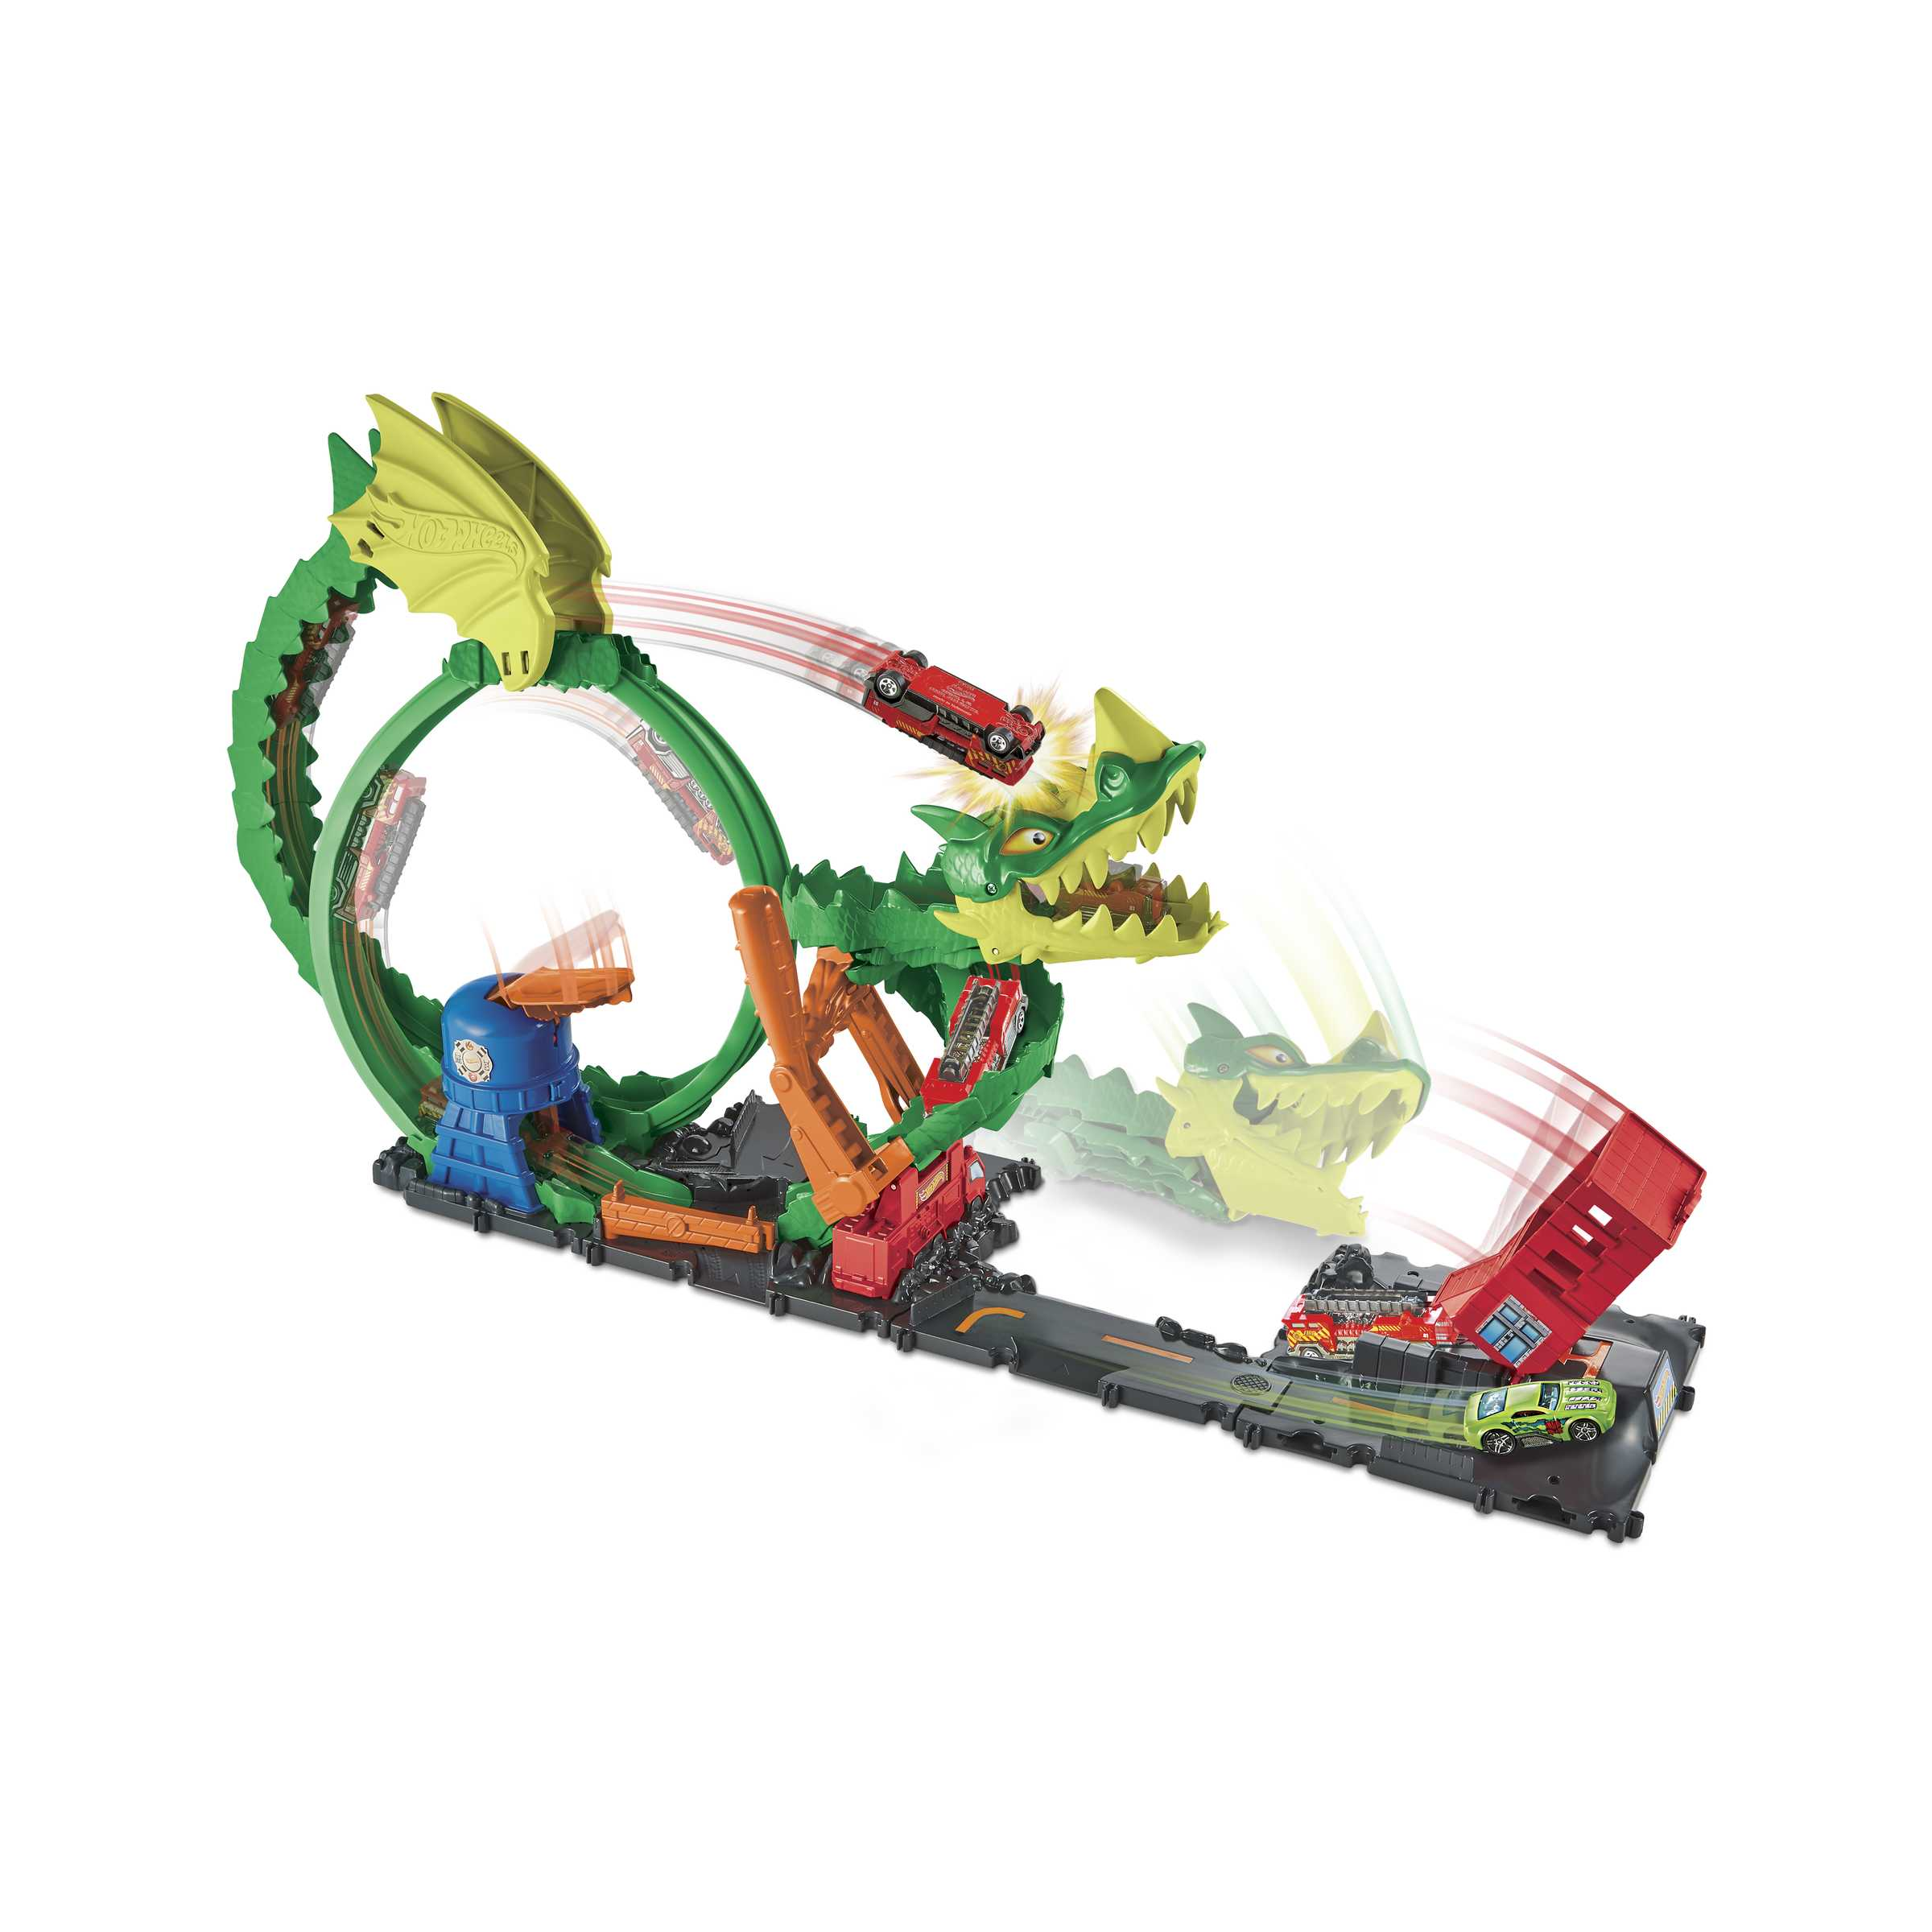 Hot wheels-dragone di fuoco con 1 veicolo die-cast incluso e stazione dei pompieri, giocattolo per bambini 5+ anni, hdp03 - Hot Wheels